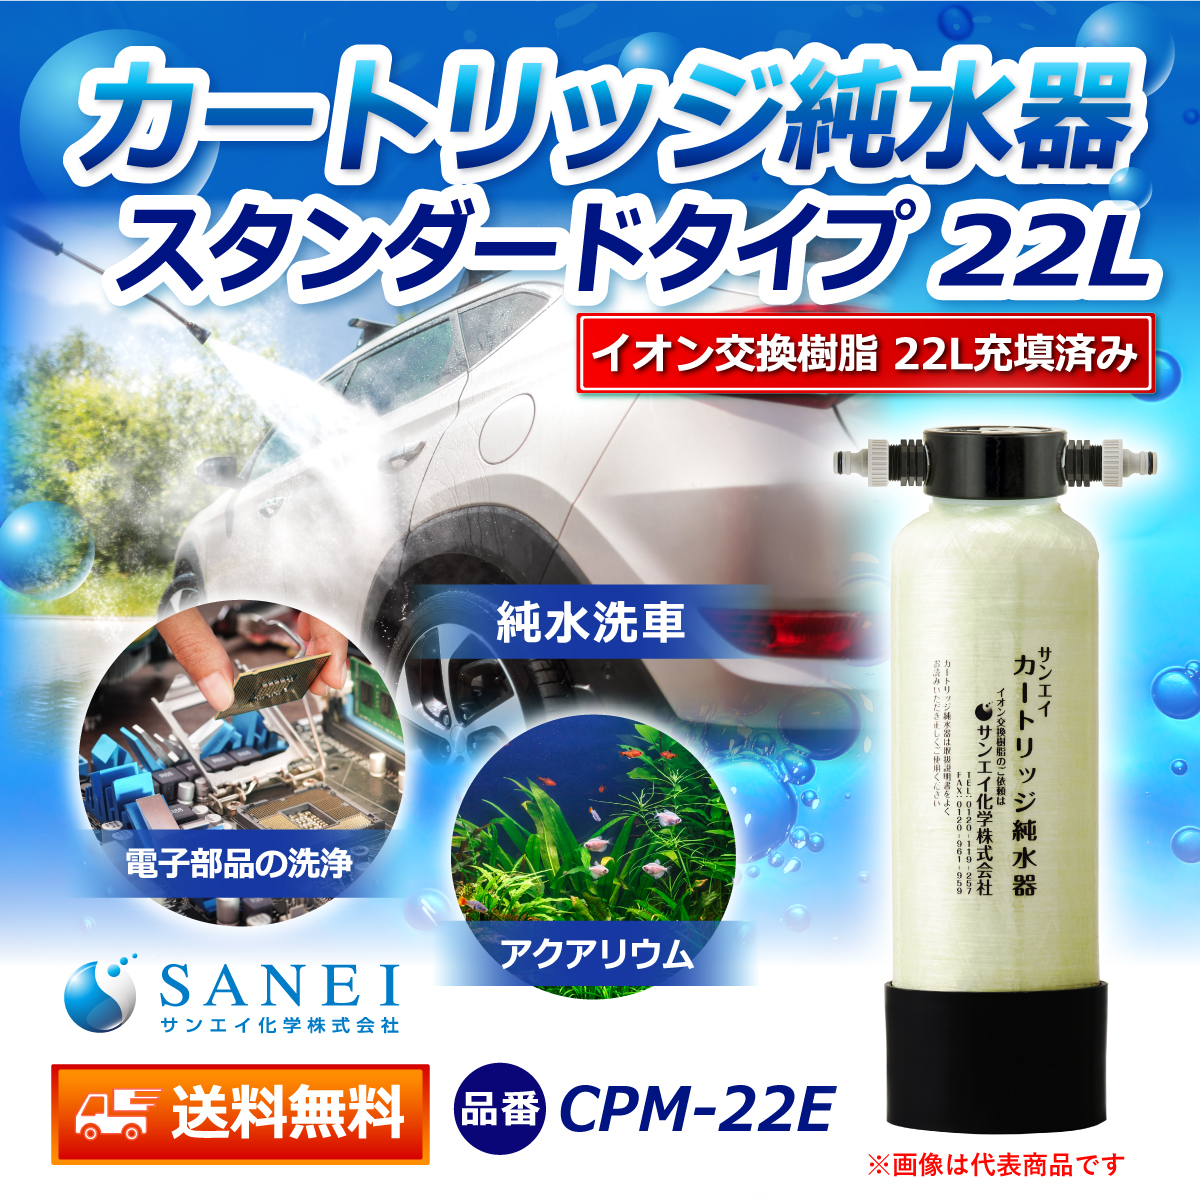 サンエイ化学 カートリッジ純水器 22L スタンダードタイプ CPM-22E イオン交換樹脂 22L入り【純水器 本体単品】